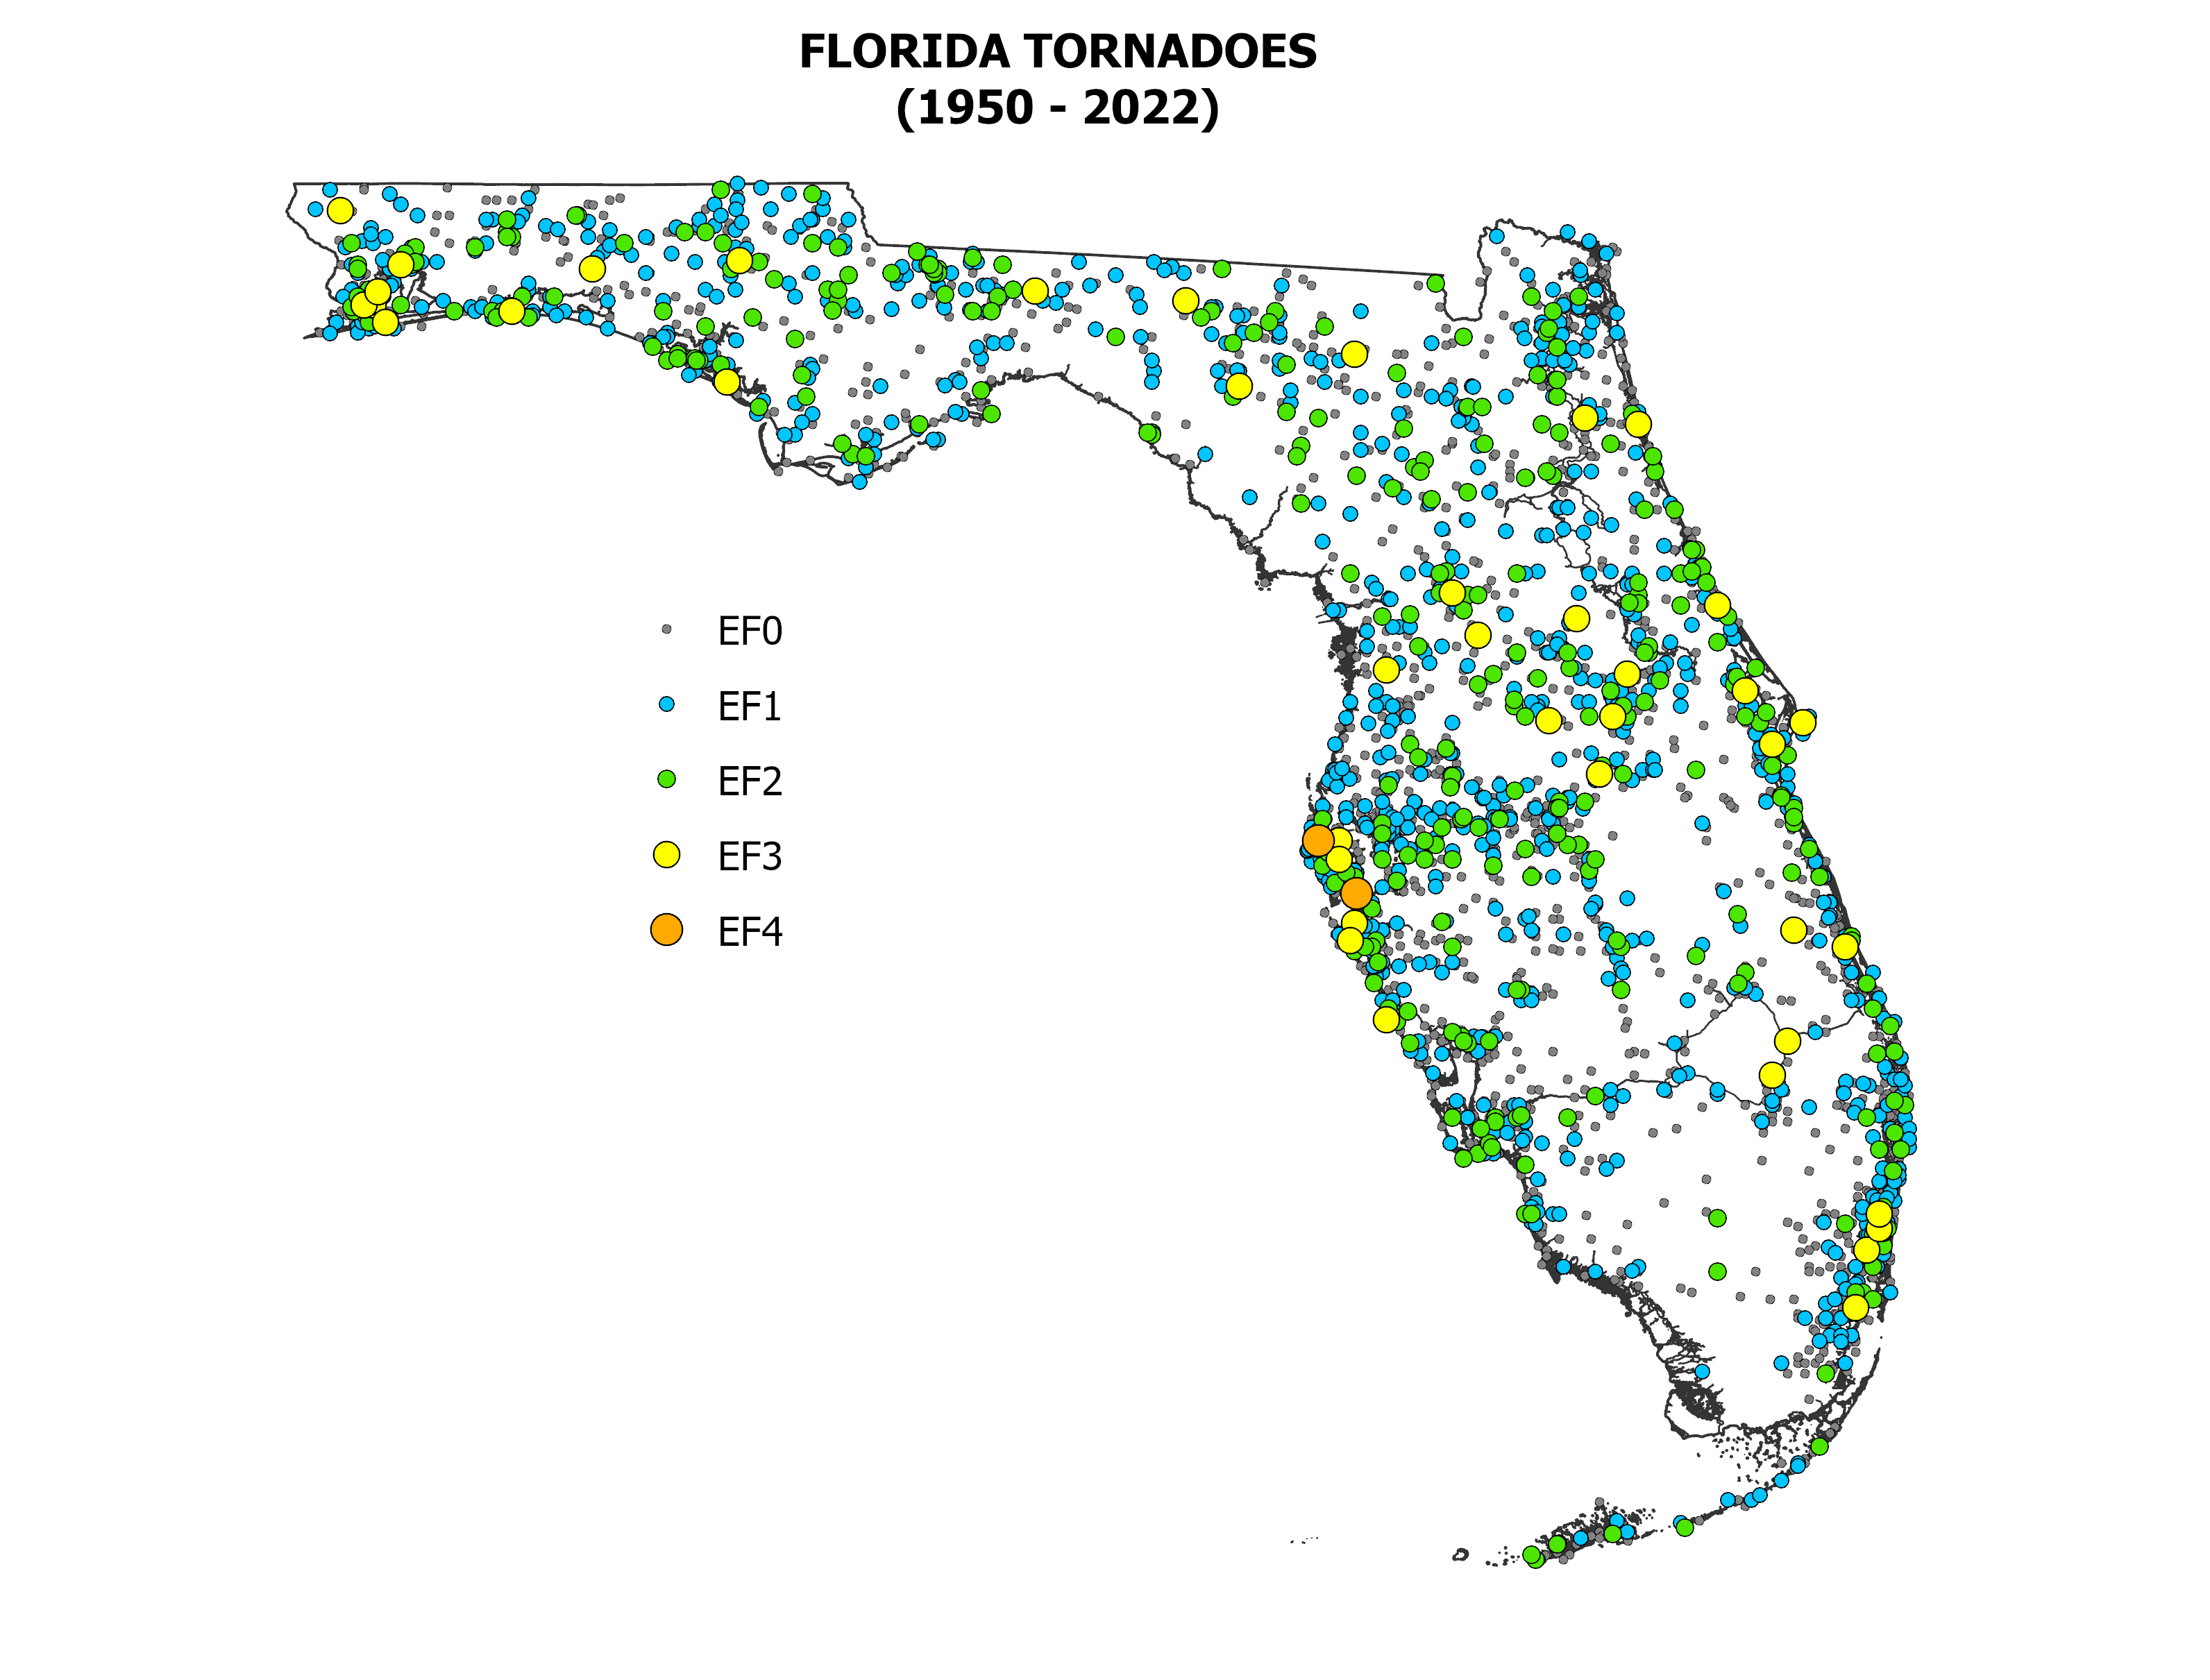 Florida tornadoes